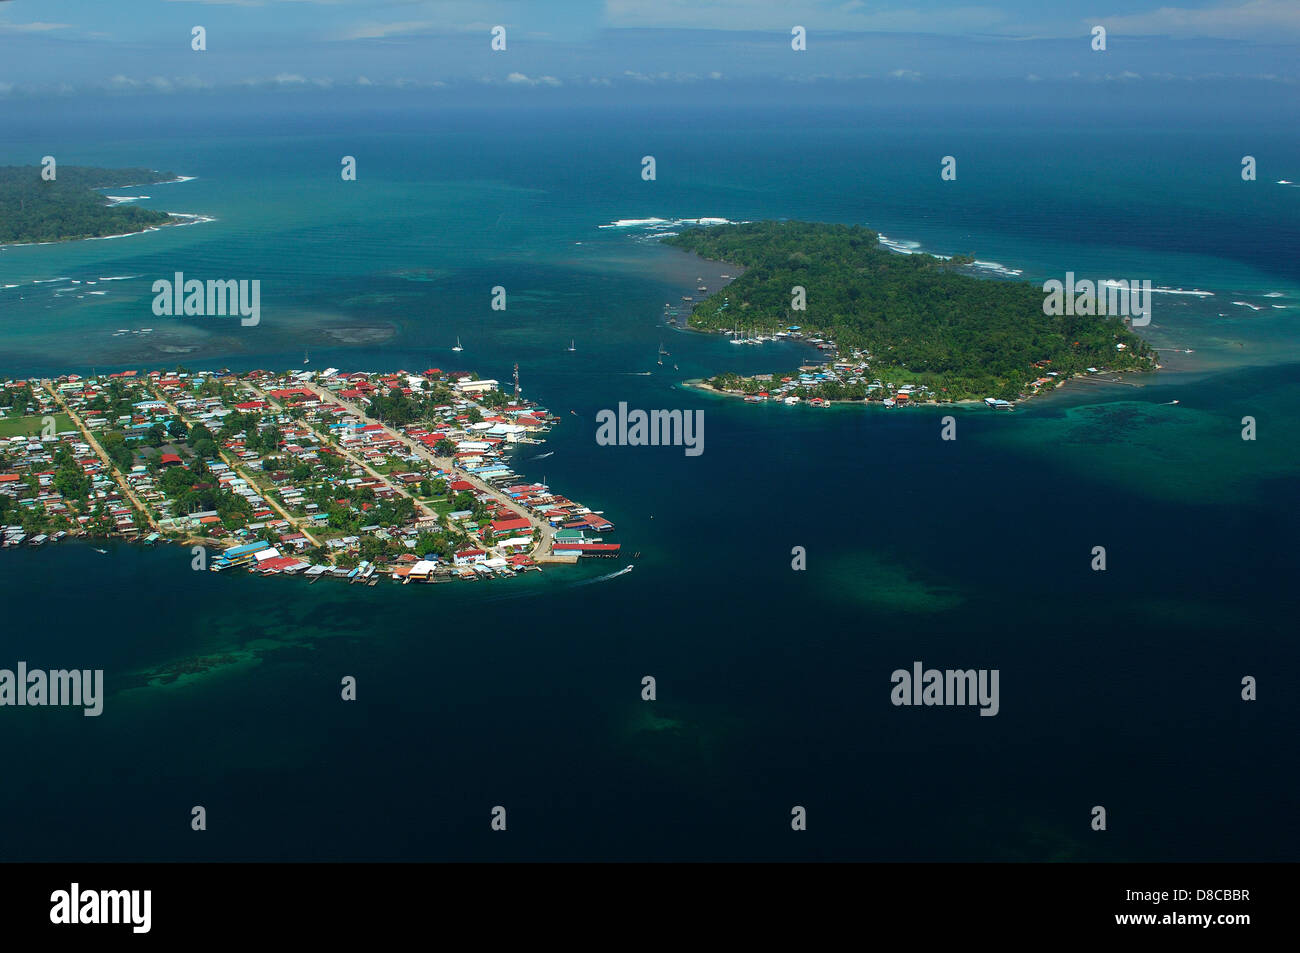 Vista aerea del colon isola a sinistra e Carenero isola a destra Foto Stock